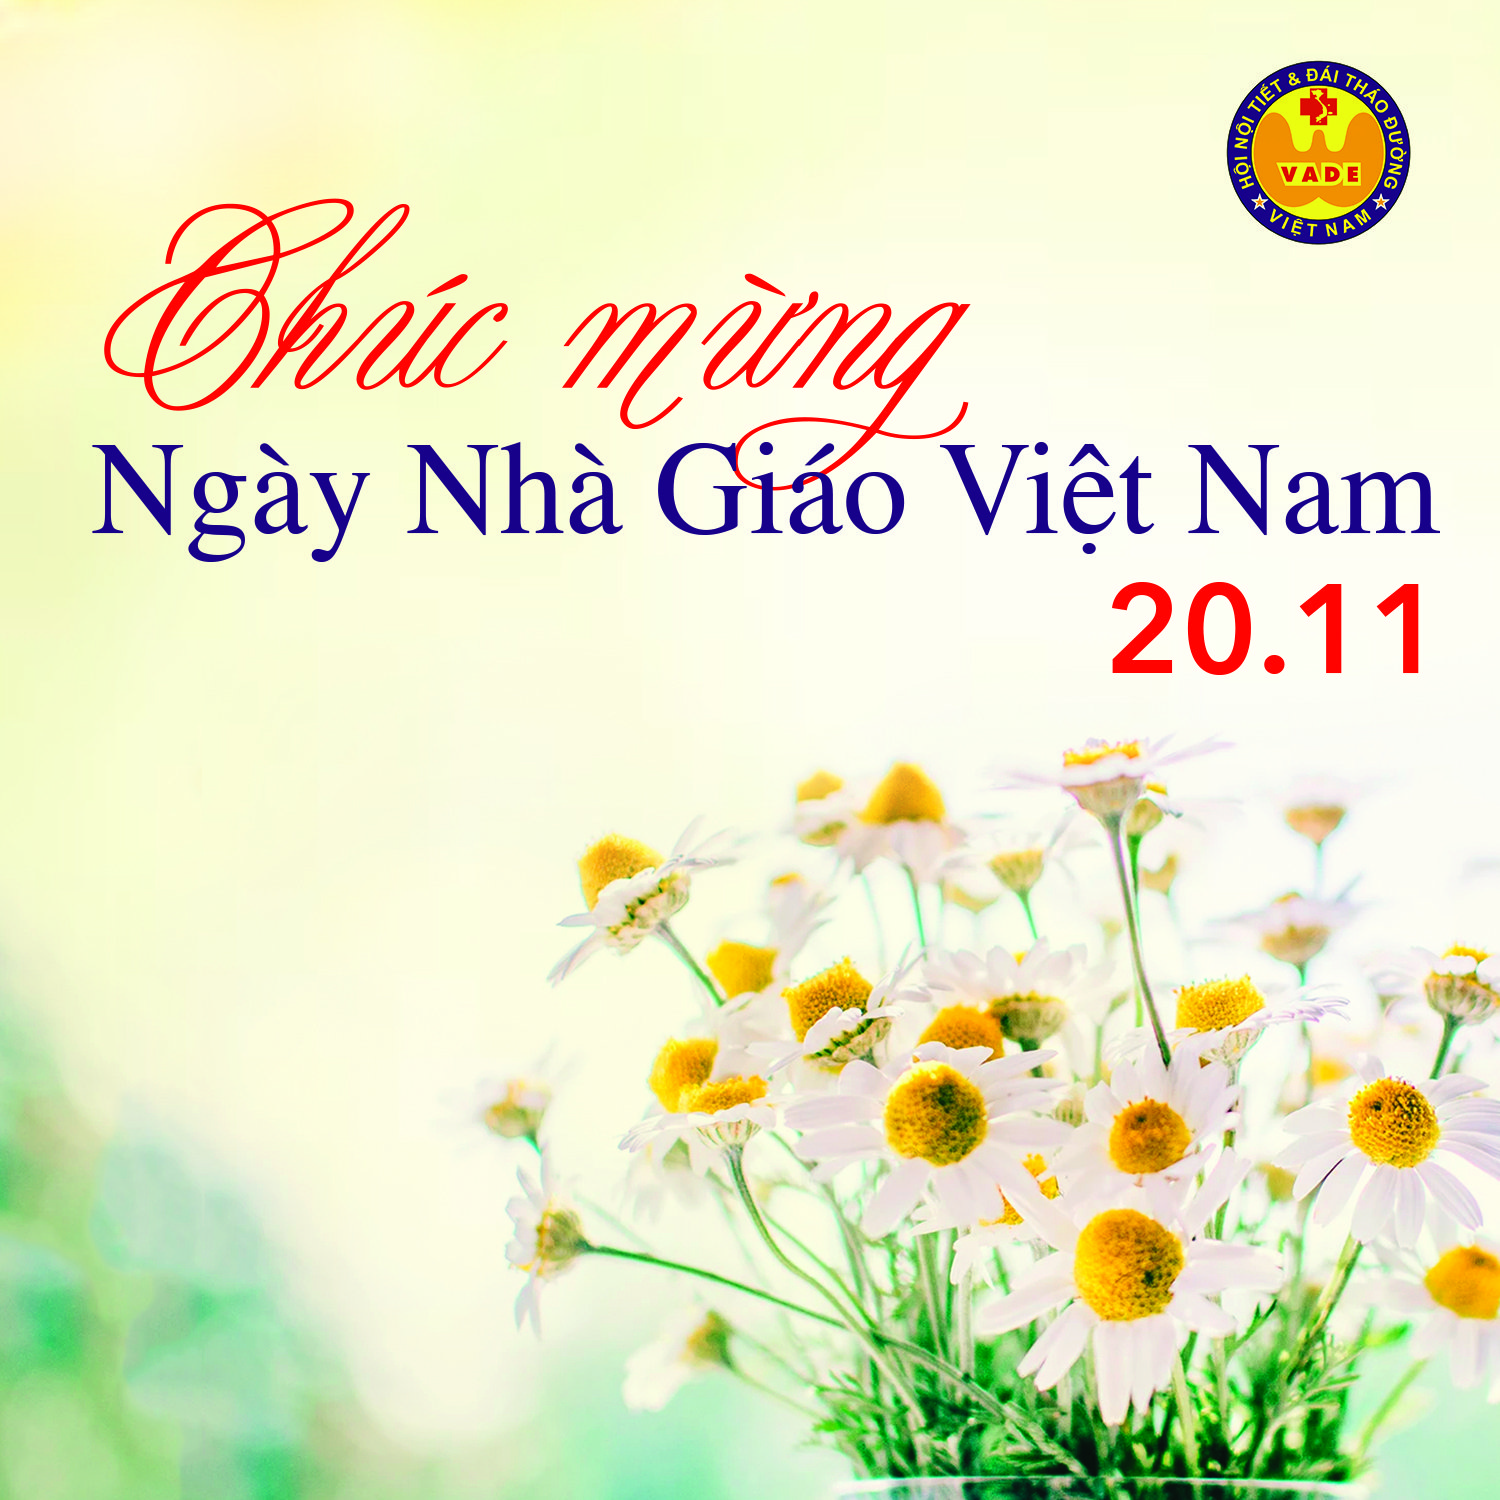 Chúc mừng ngày nhà giáo Việt Nam 20/11 – Hội Nội tiết & Đái tháo đường Việt  Nam